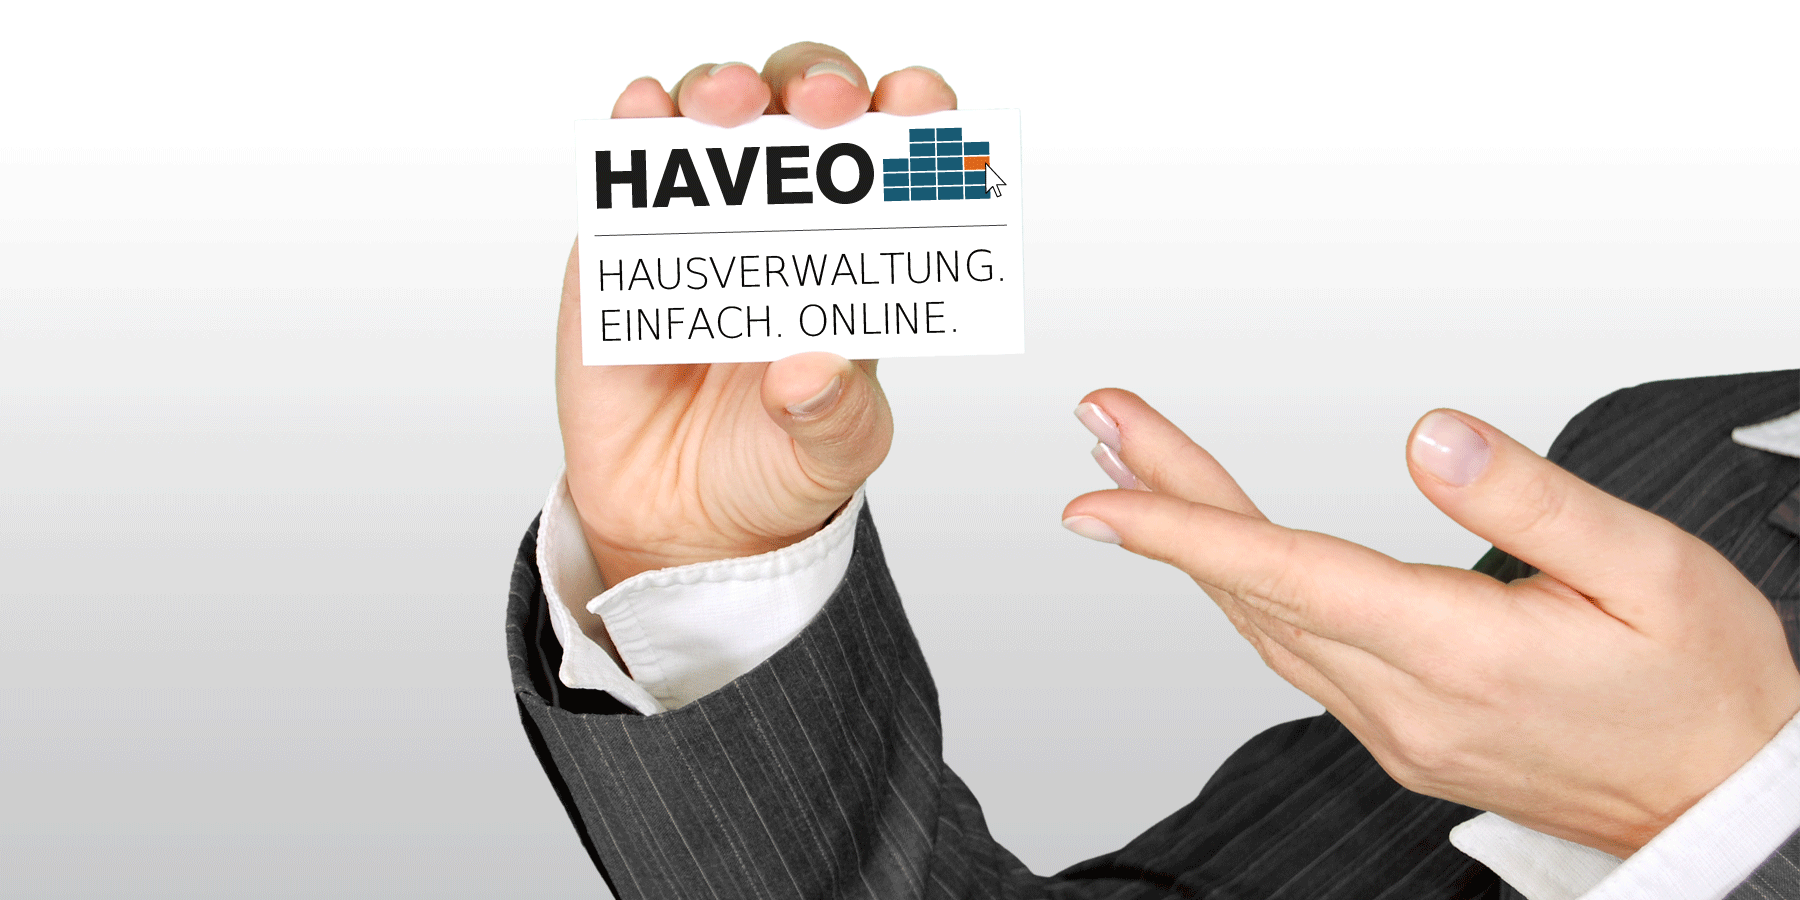 HAVEO Immobilien Gmbh - Hausverwaltung. einfach. online.